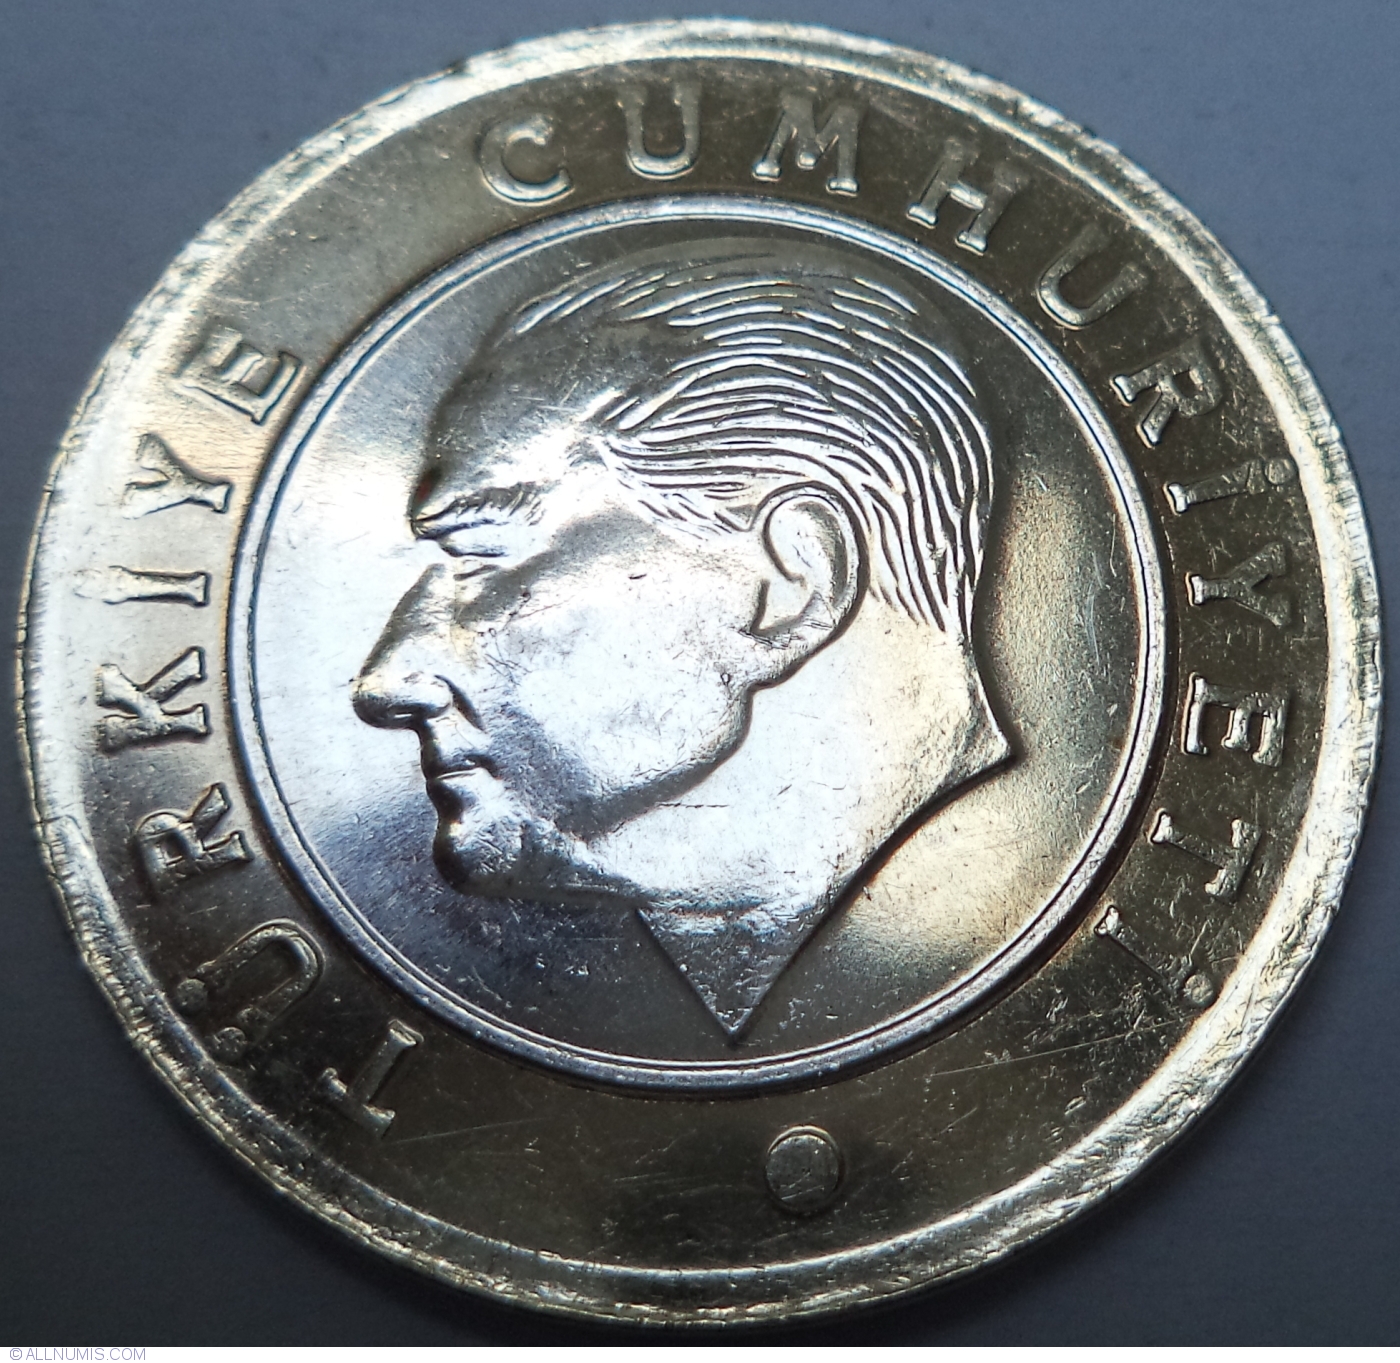 1-lira-2017-republic-2009-turkey-coin-41514